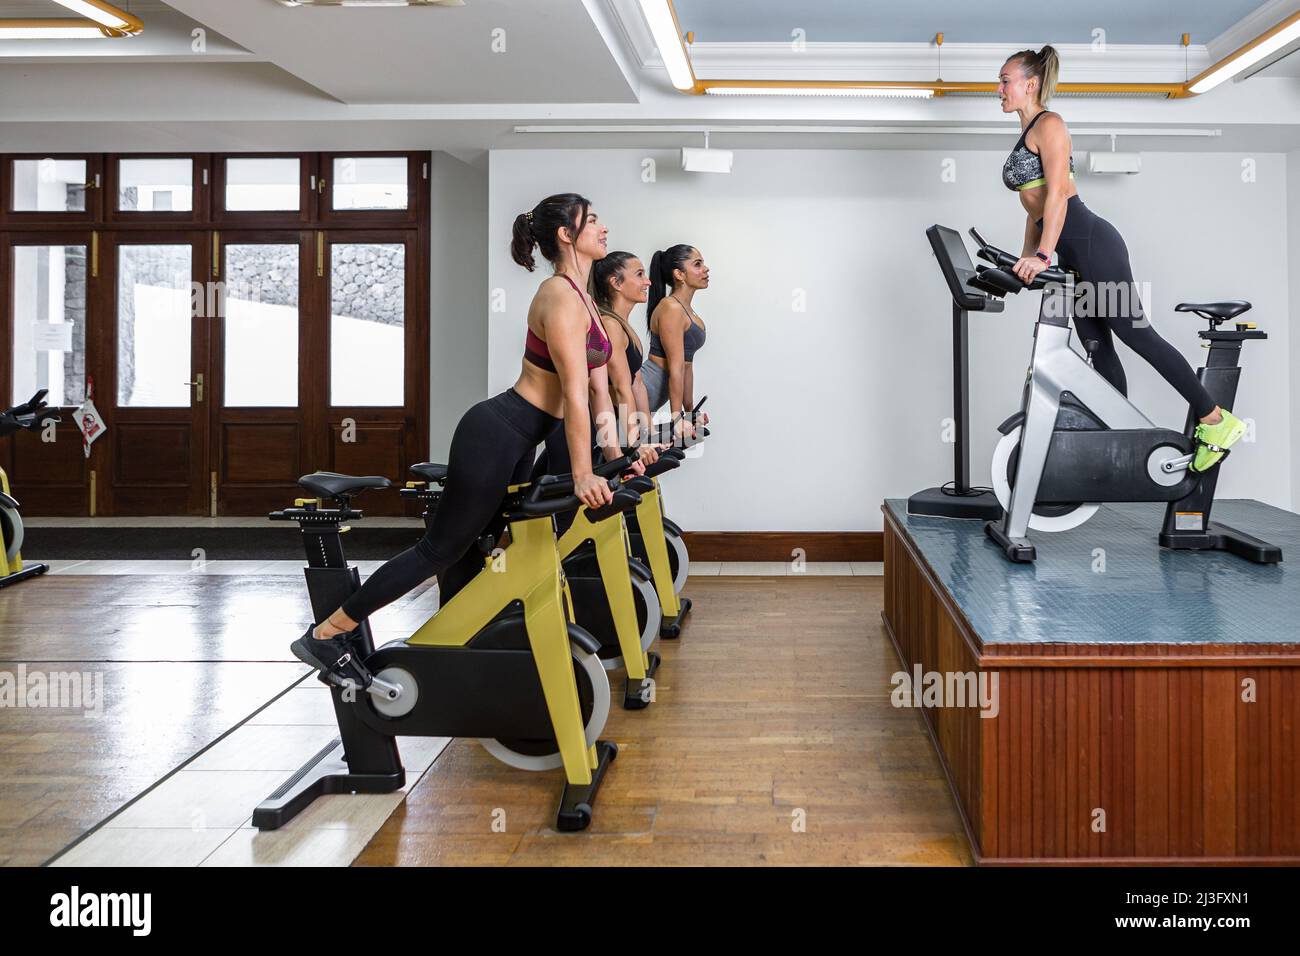 Seitenansicht der Sportlerinnen und der weiblichen Ausbilderin, die sich während des Fitnesstrainings in einem leichten Fitnessstudio am Lenker des Ergometer stützt Stockfoto